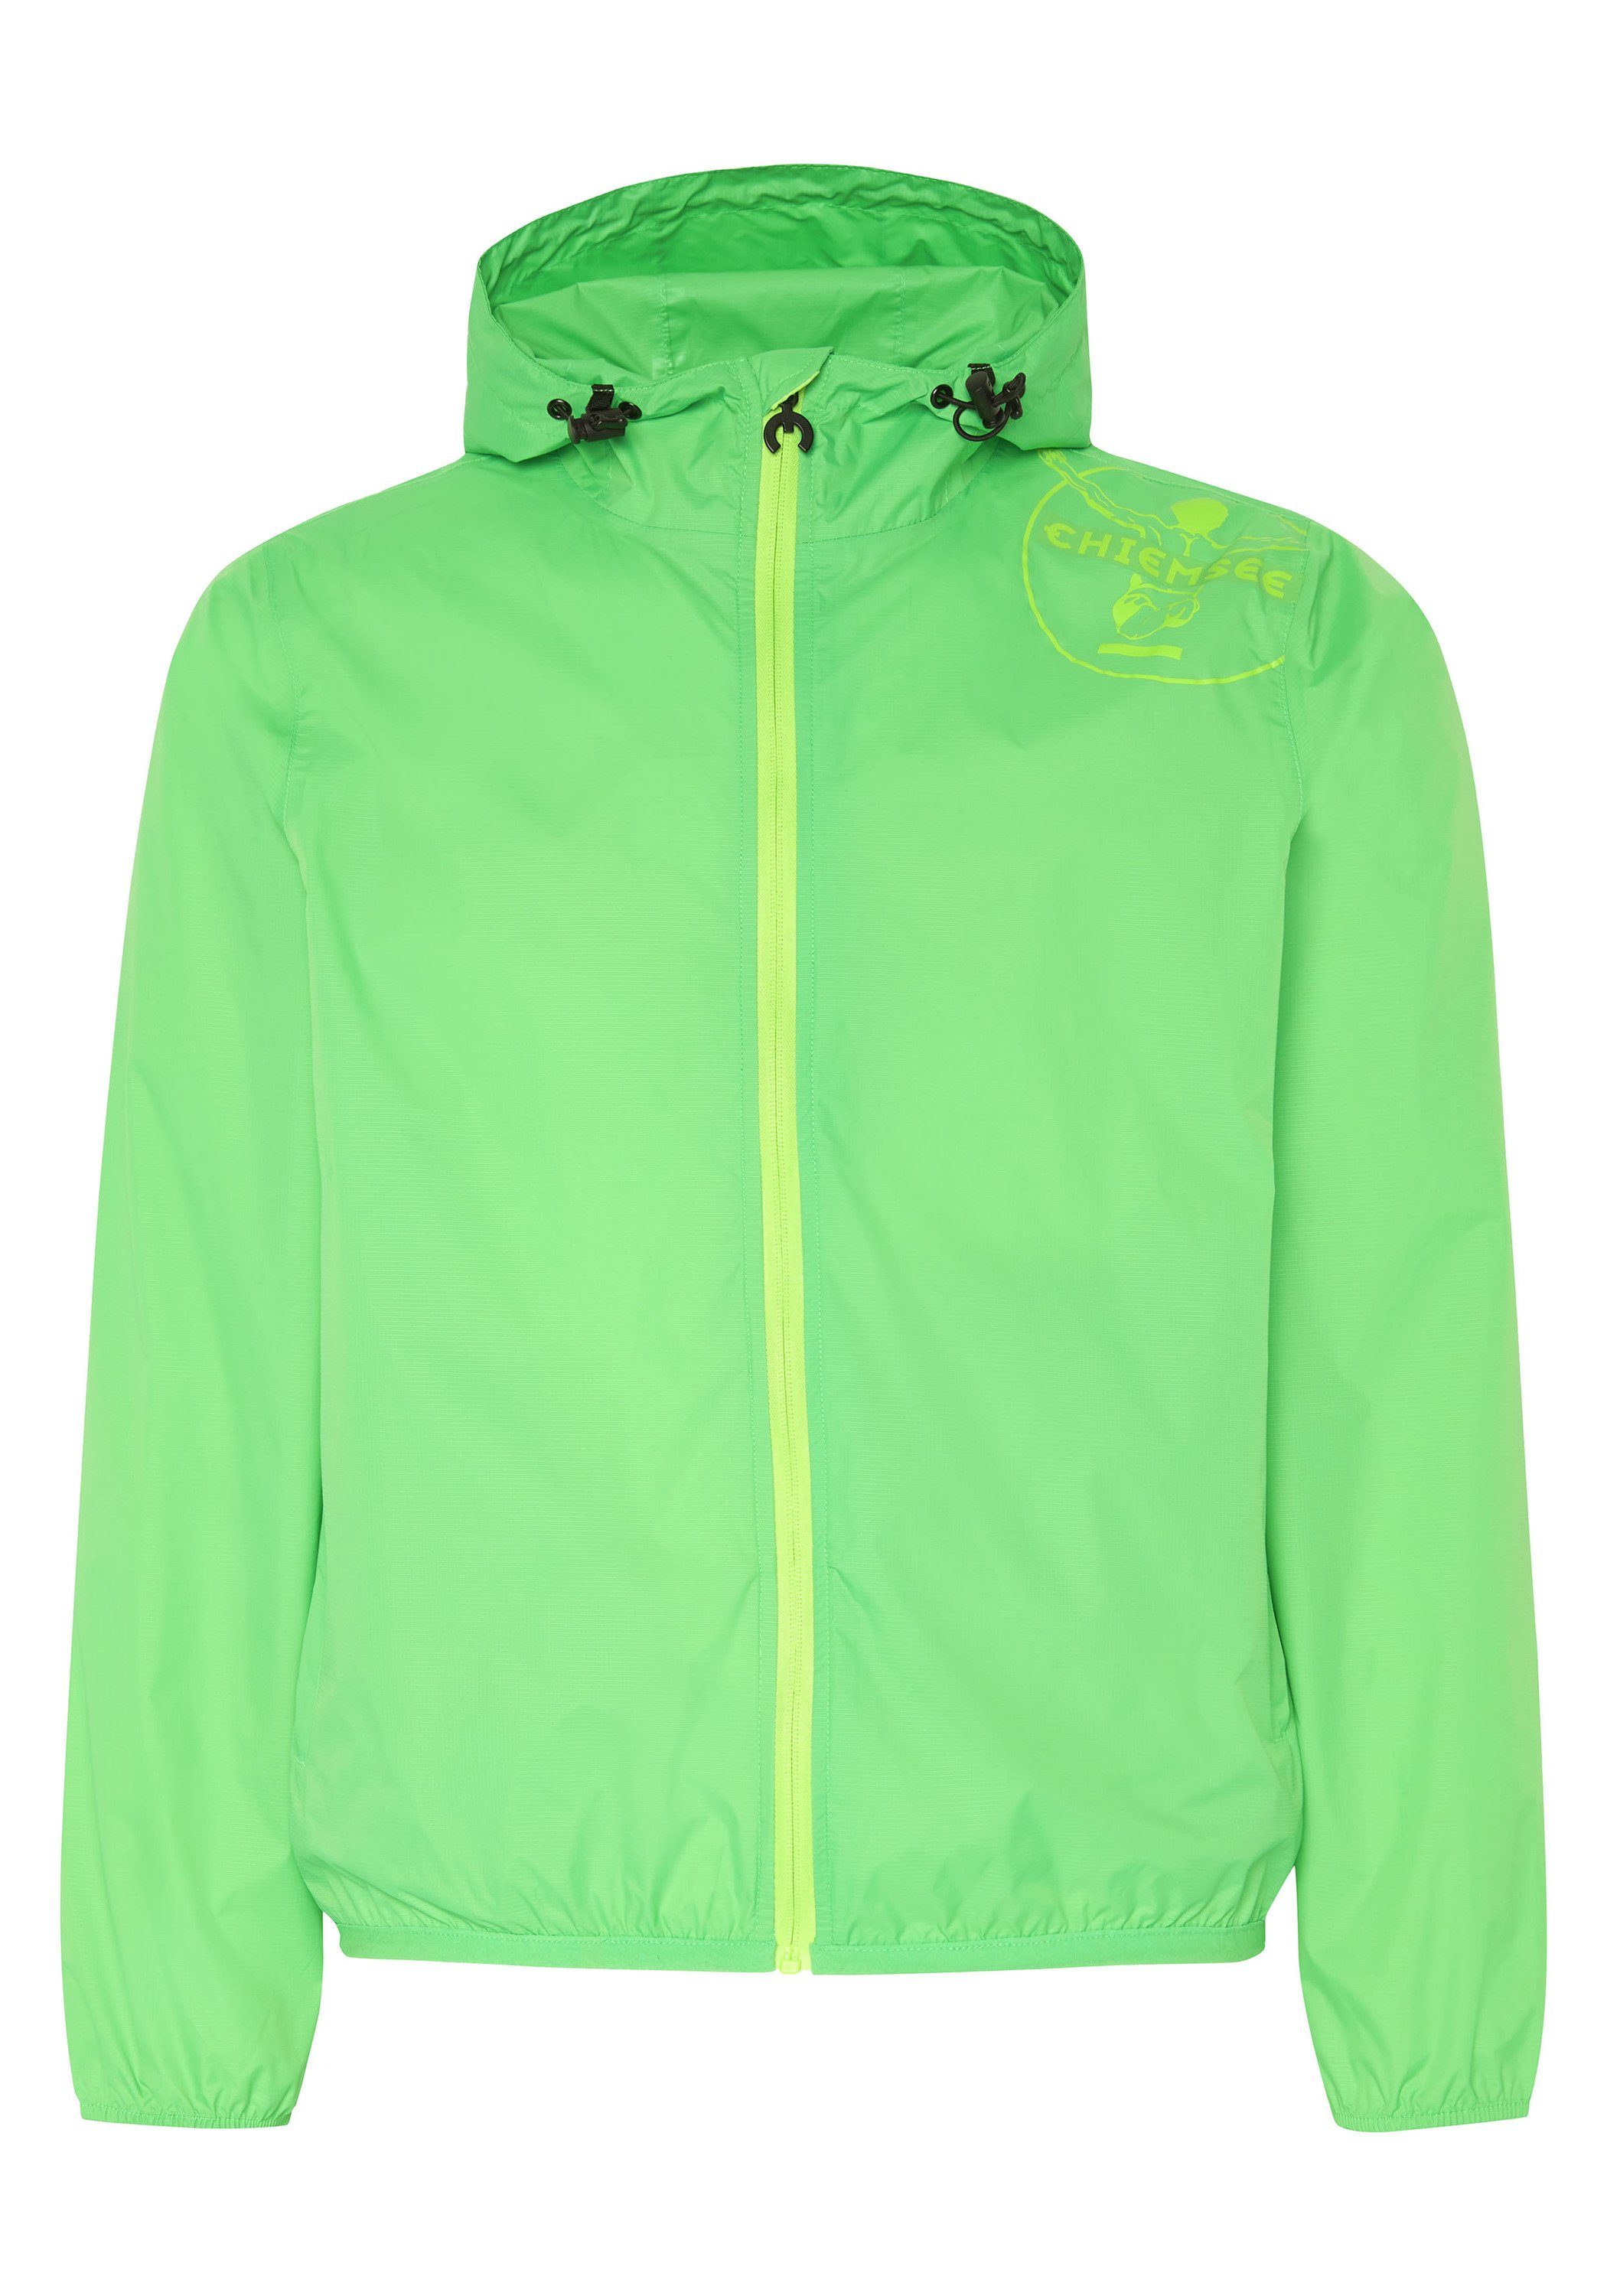 Chiemsee Outdoorjacke Regenjacke mit Jumper-Motiv und Taschen-Funktion 1 grün